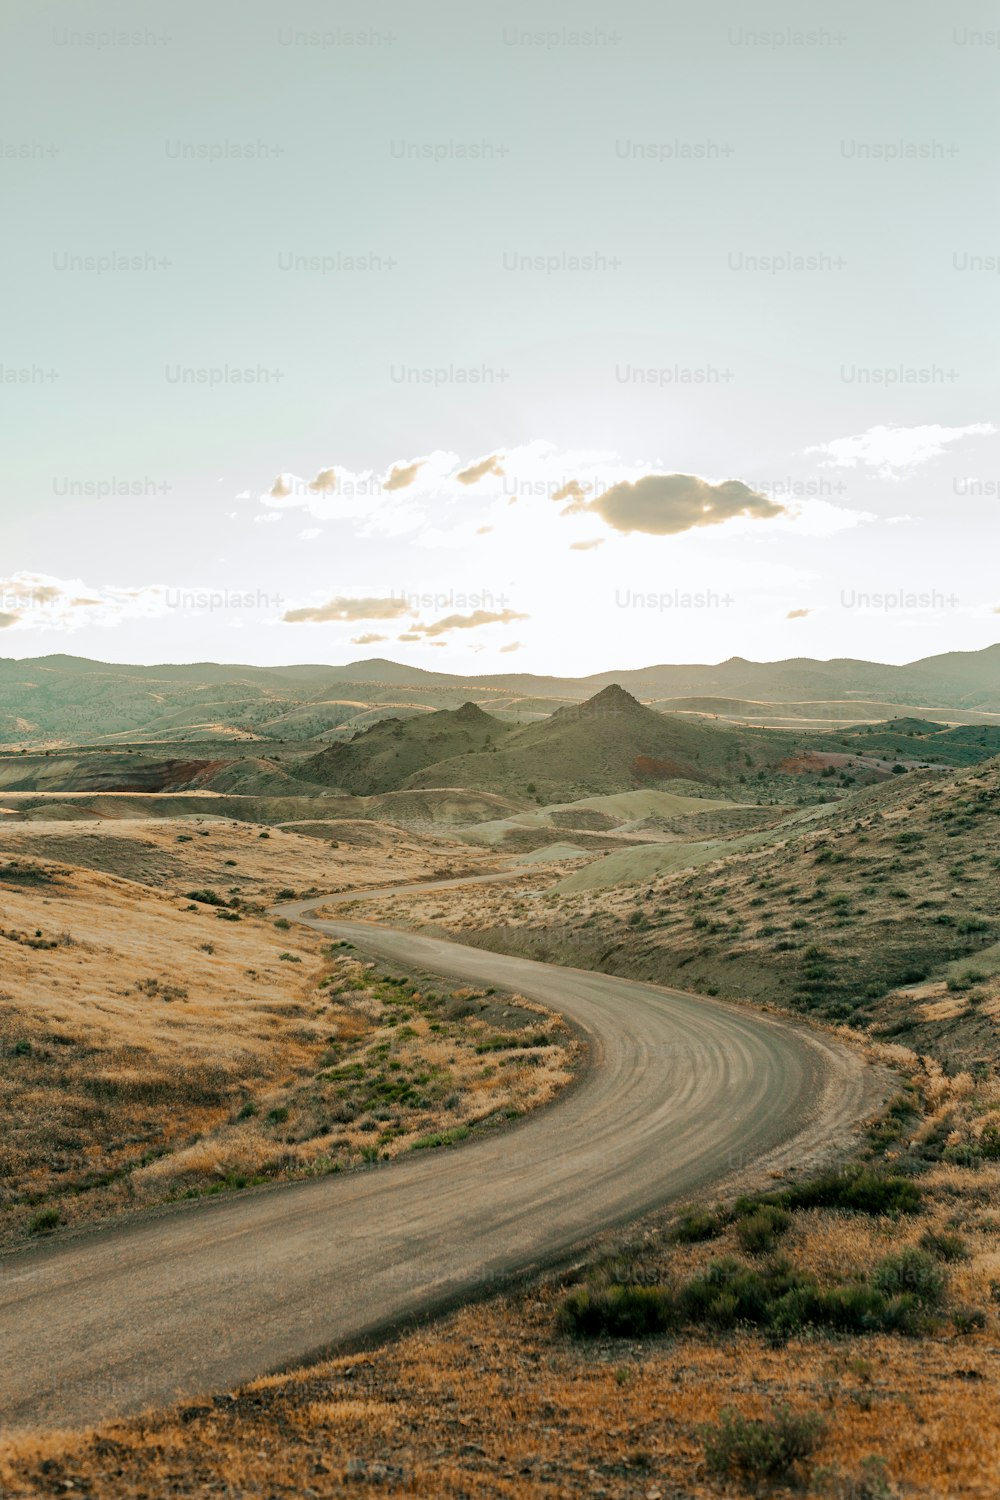 Un camino sinuoso en medio de un desierto